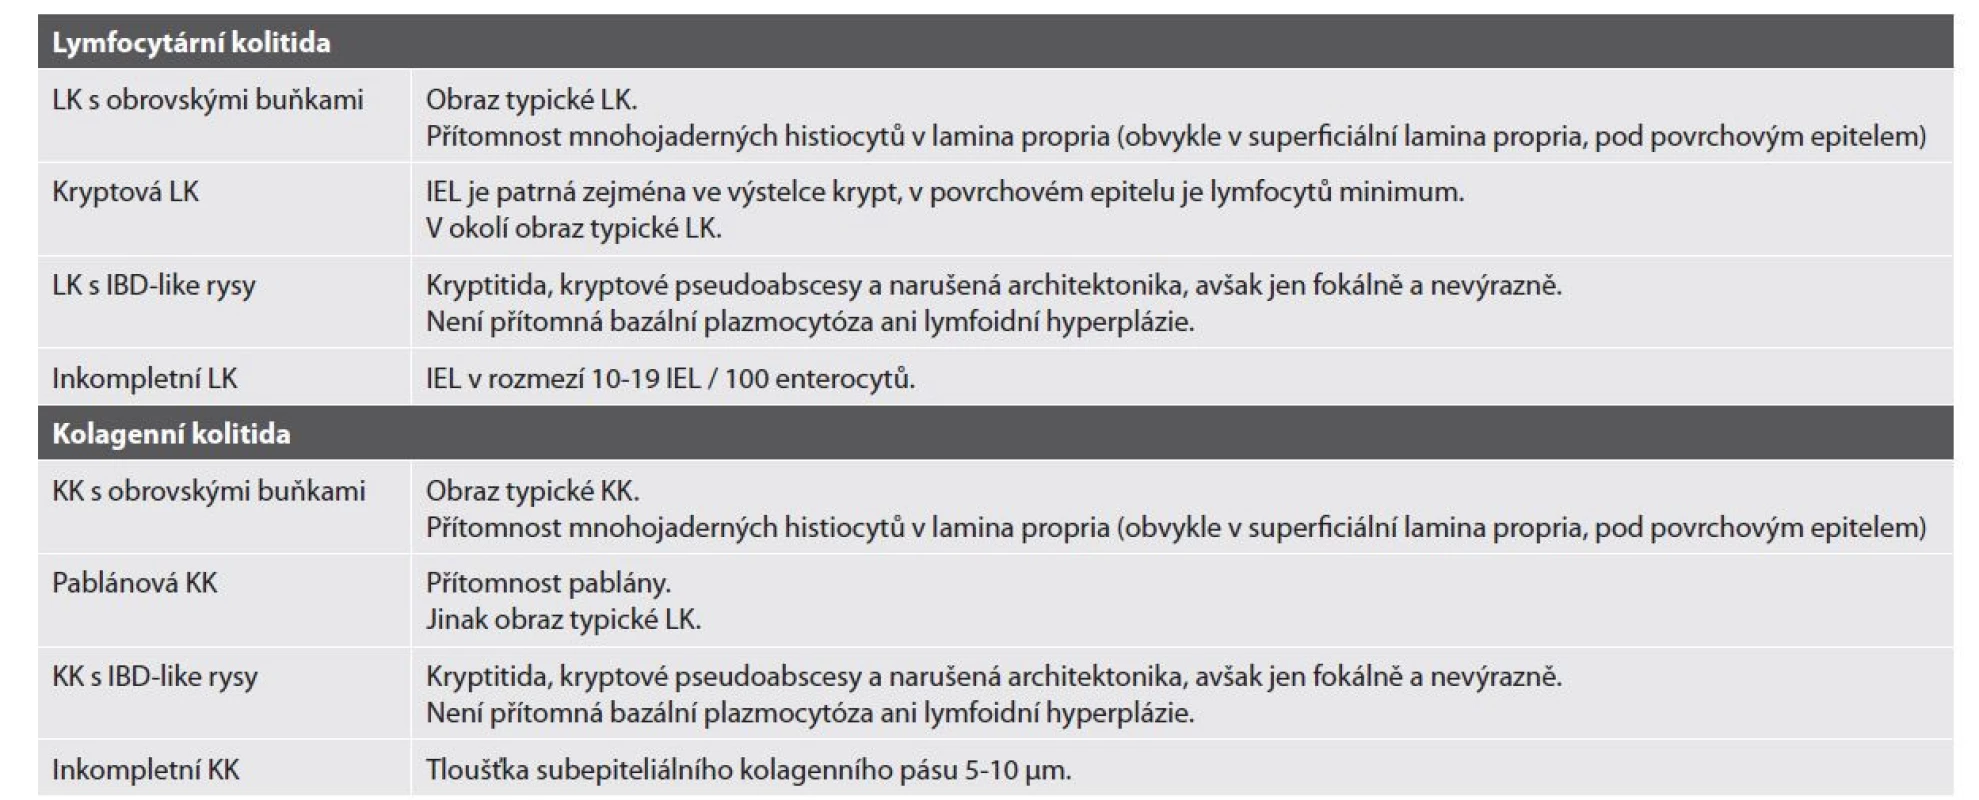 Histopatologické varianty lymfocytární a kolagenní kolitidy.